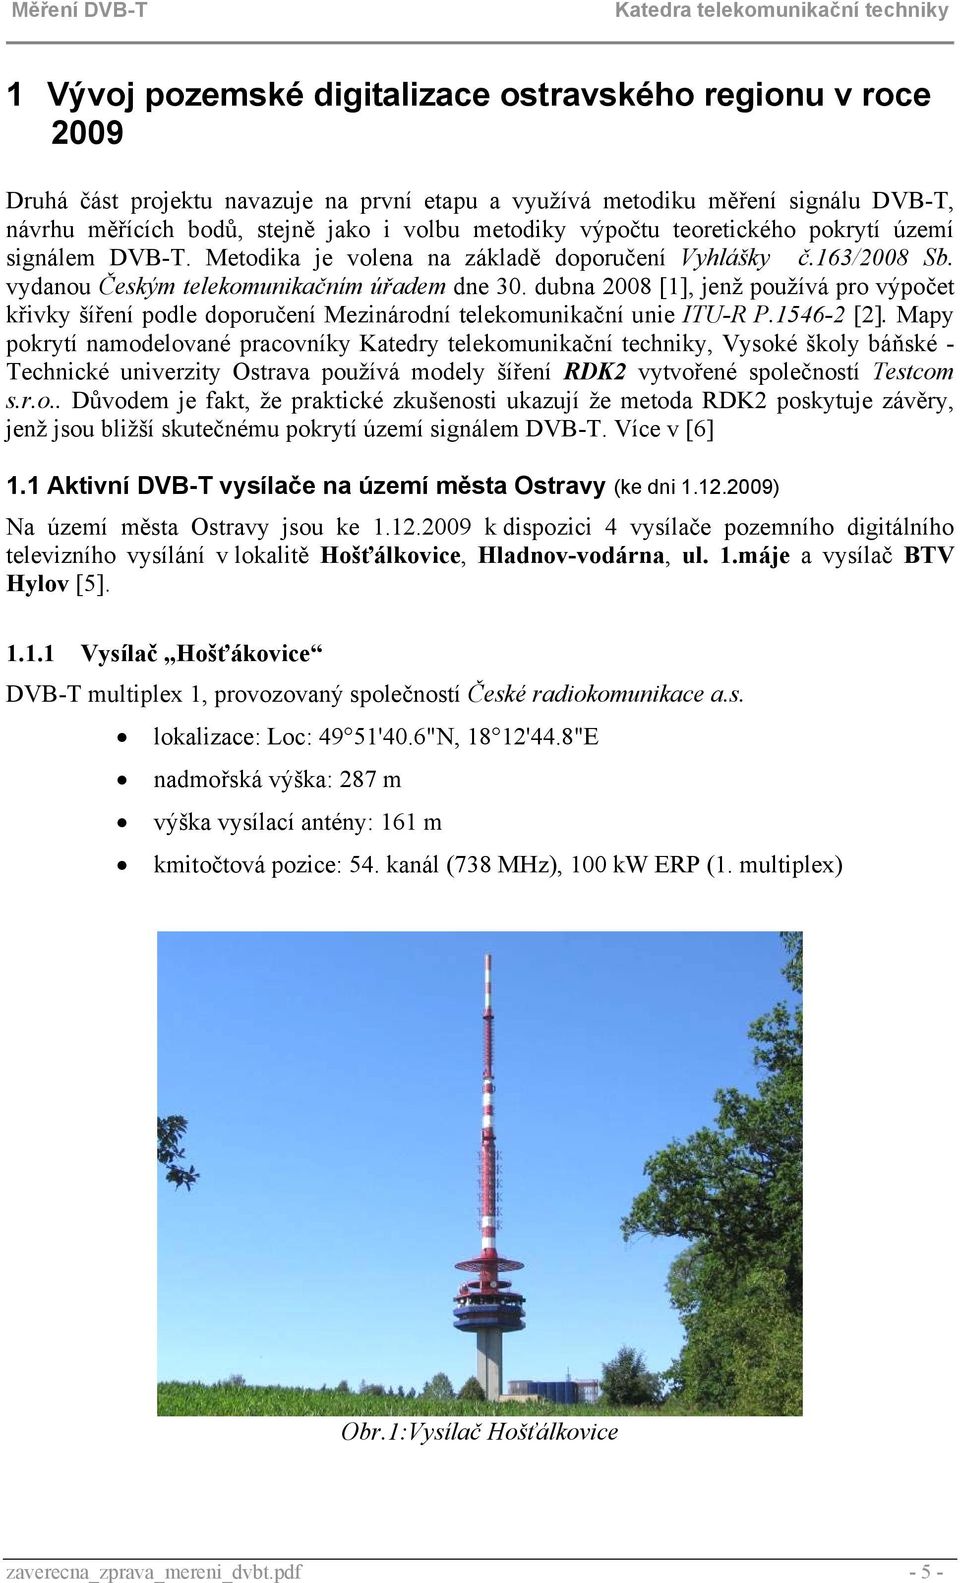 dubna 2008 [1], jenž používá pro výpočet křivky šíření podle doporučení Mezinárodní telekomunikační unie ITU-R P.1546-2 [2].